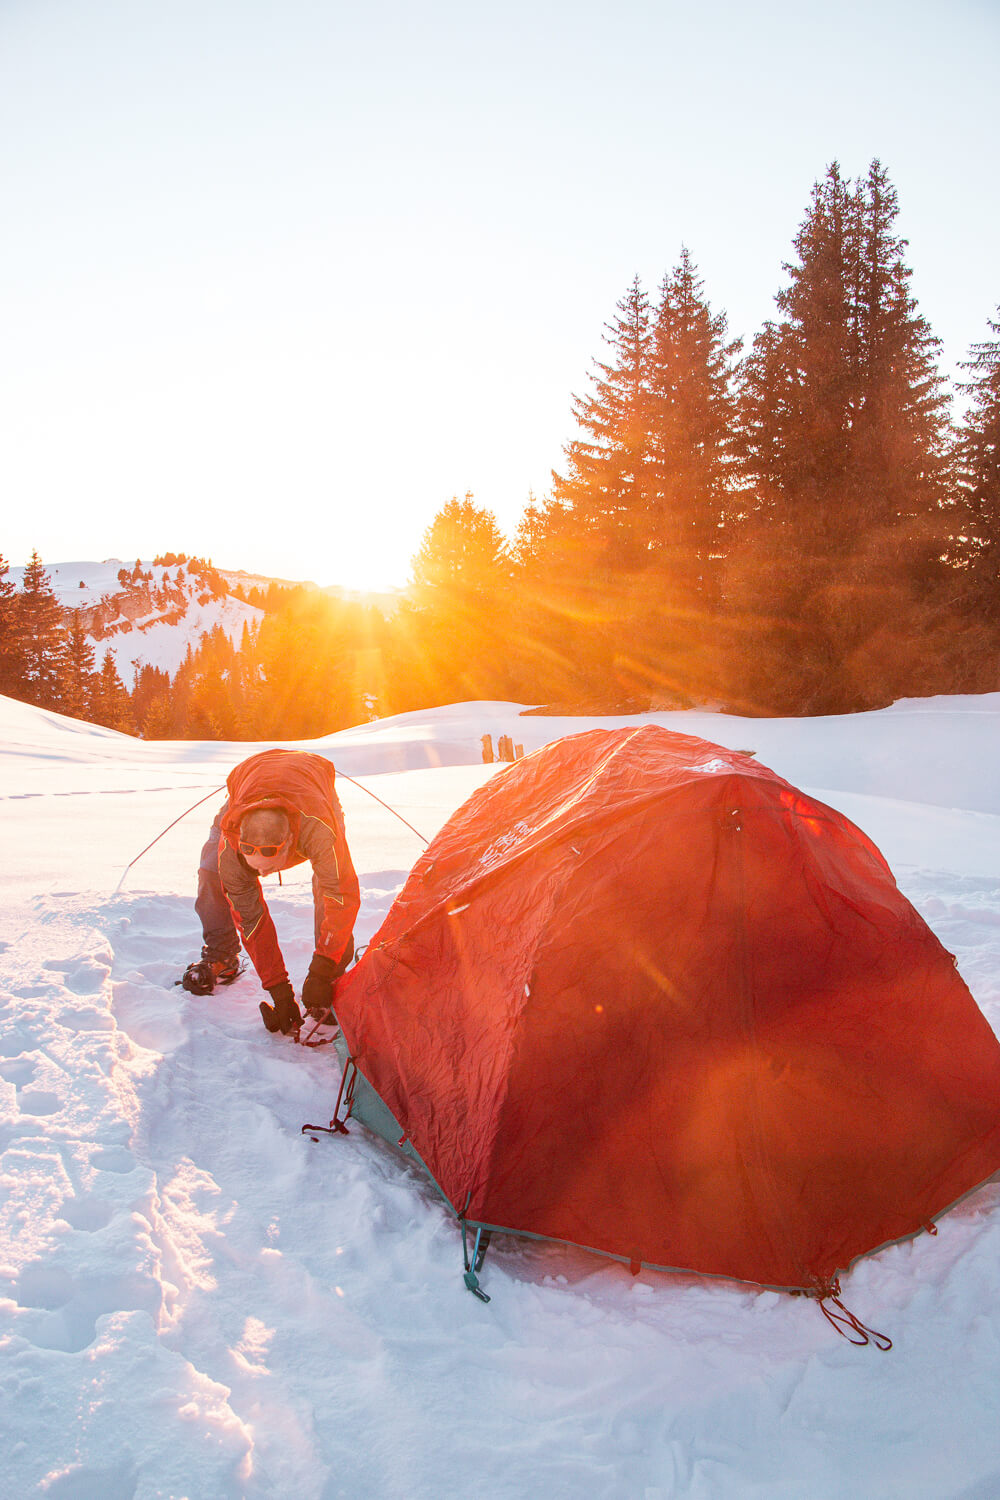 installation des tentes pour le bivouac dans la neige au coucher du soleil